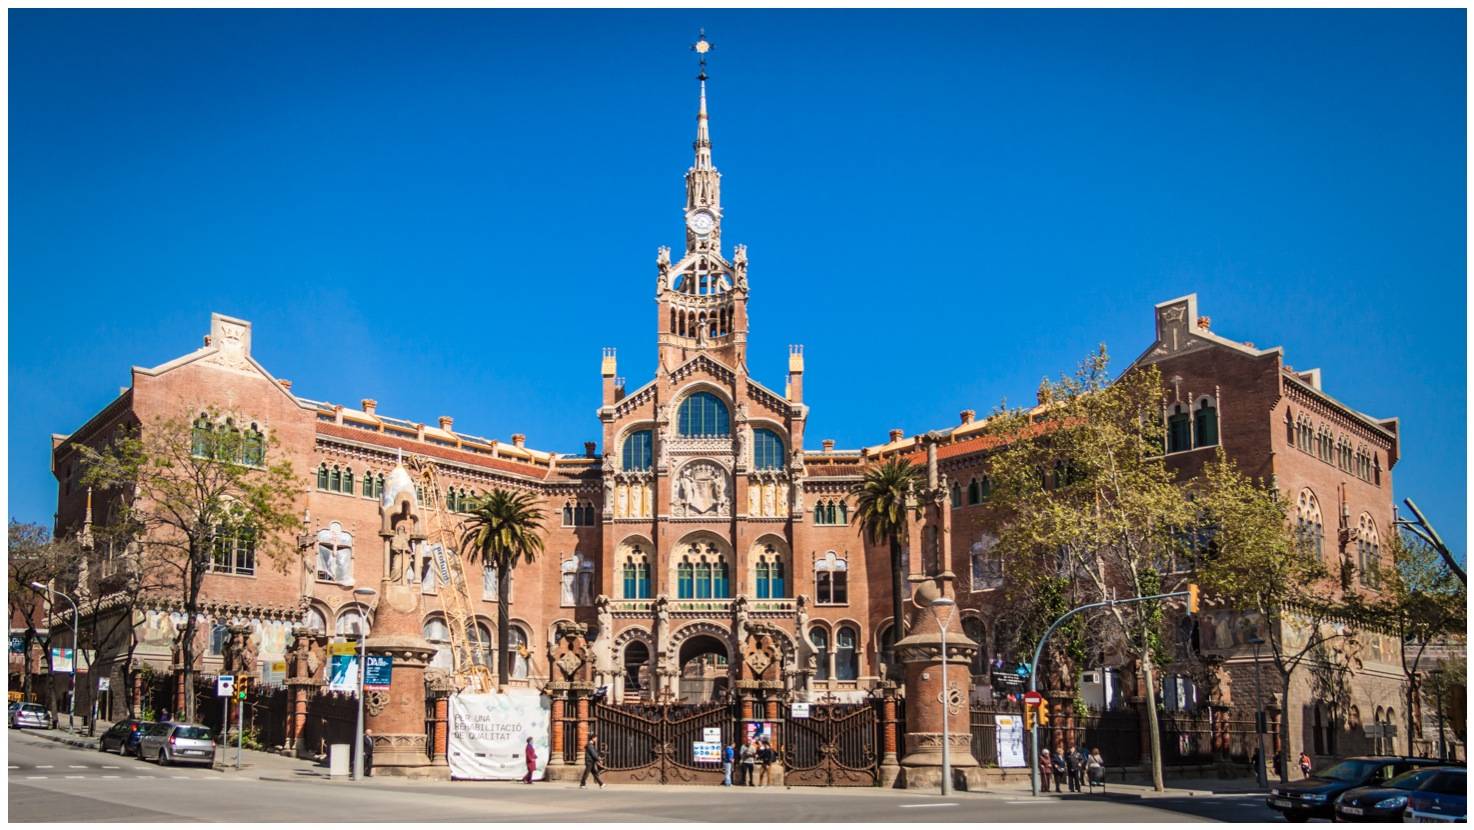 Барселона, больница сант-пау, архитектурный шедевр доменека-и-монтанера